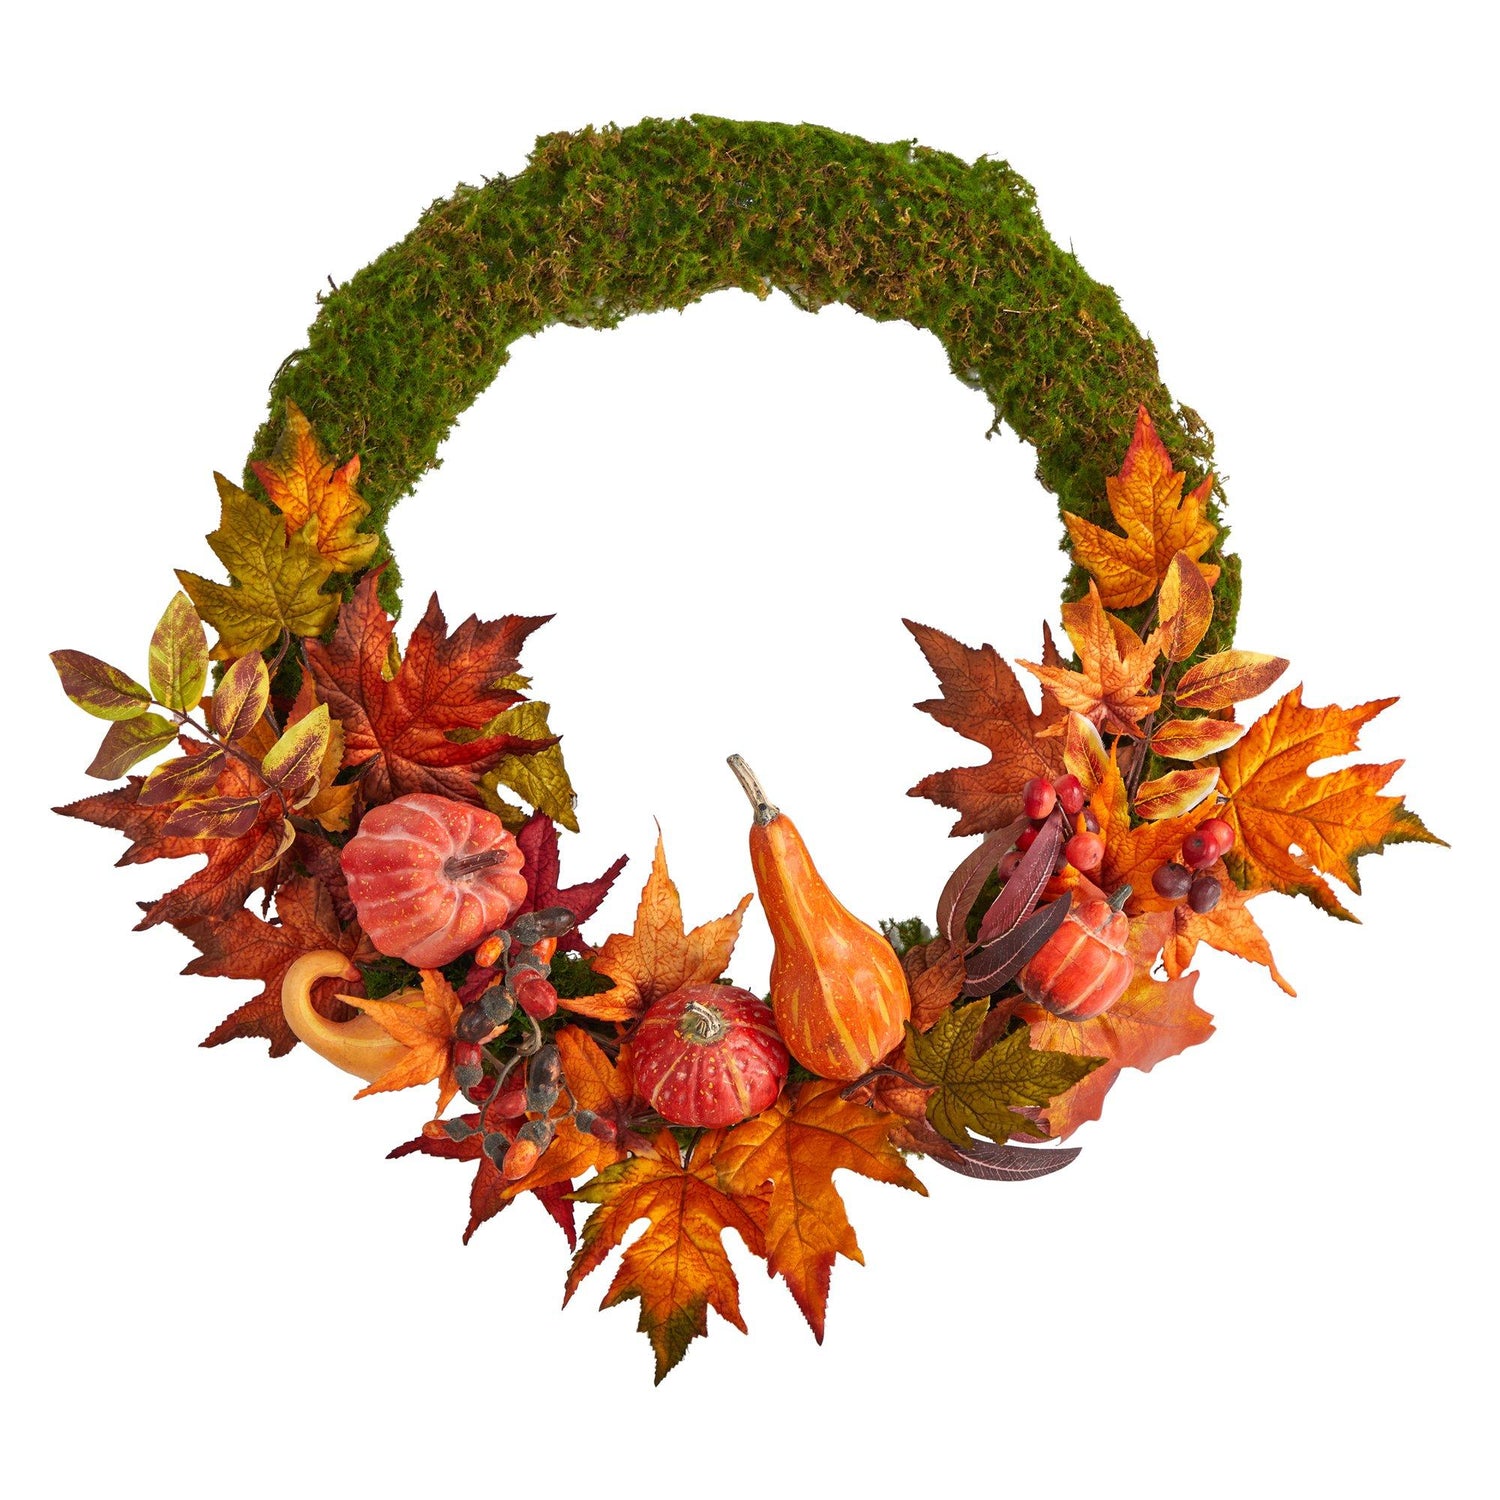 20” Autumn Pumpkin, Gourd and Fall Maple Leaf Artificial Wreath